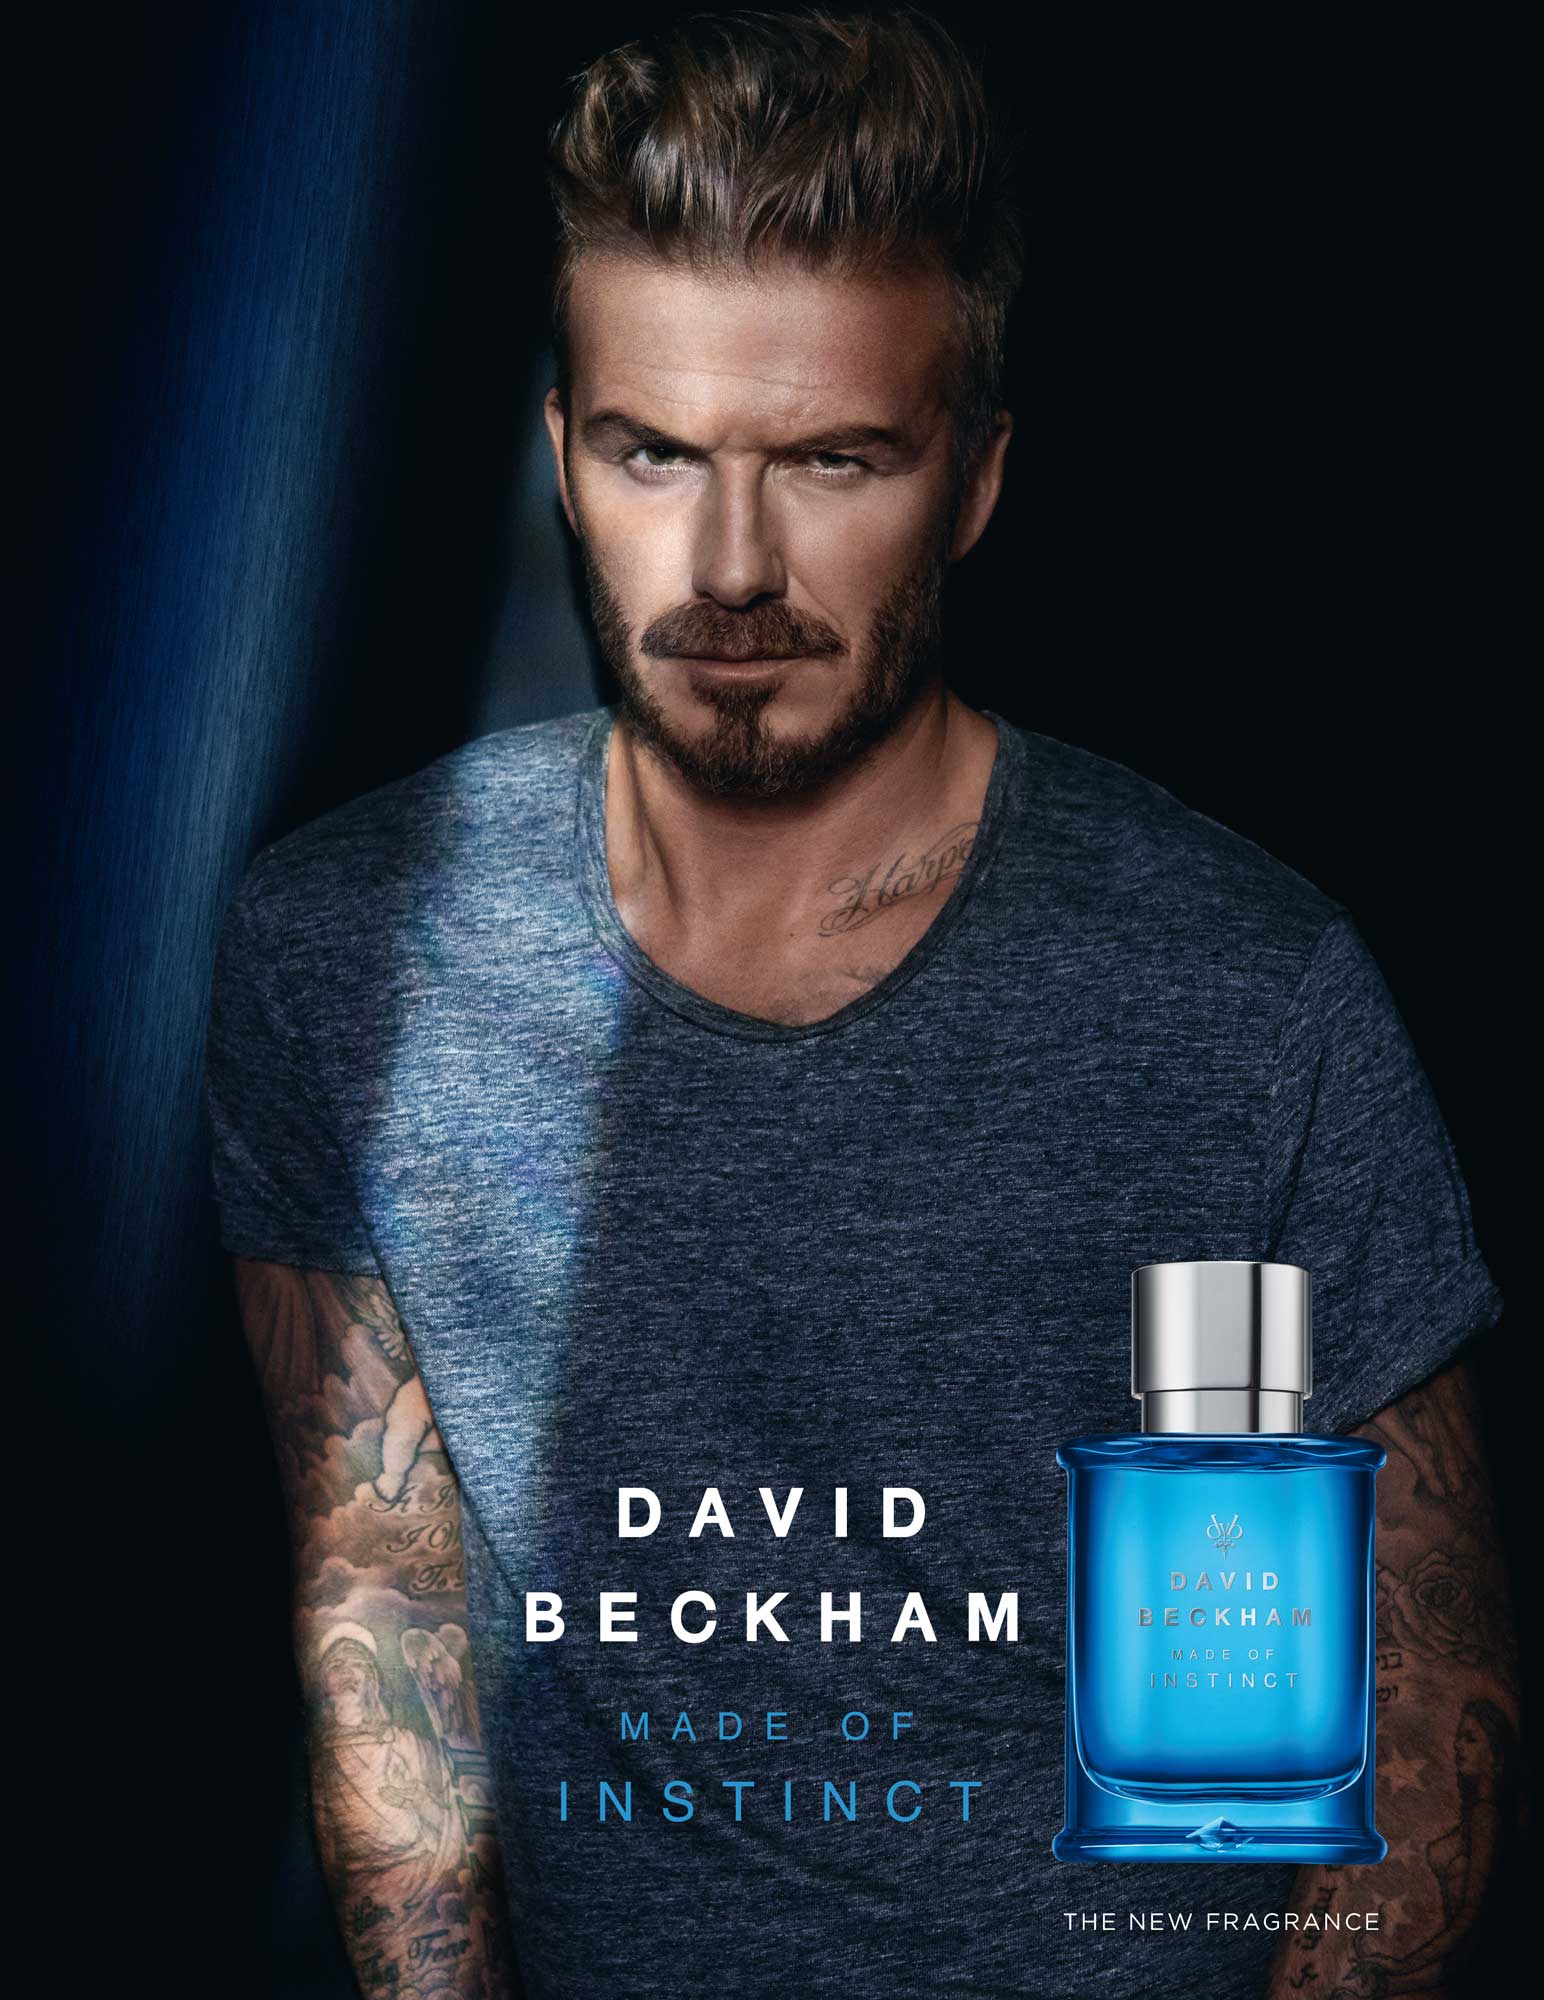 Nước hoa David Beckham nổi tiếng khắp thế giới